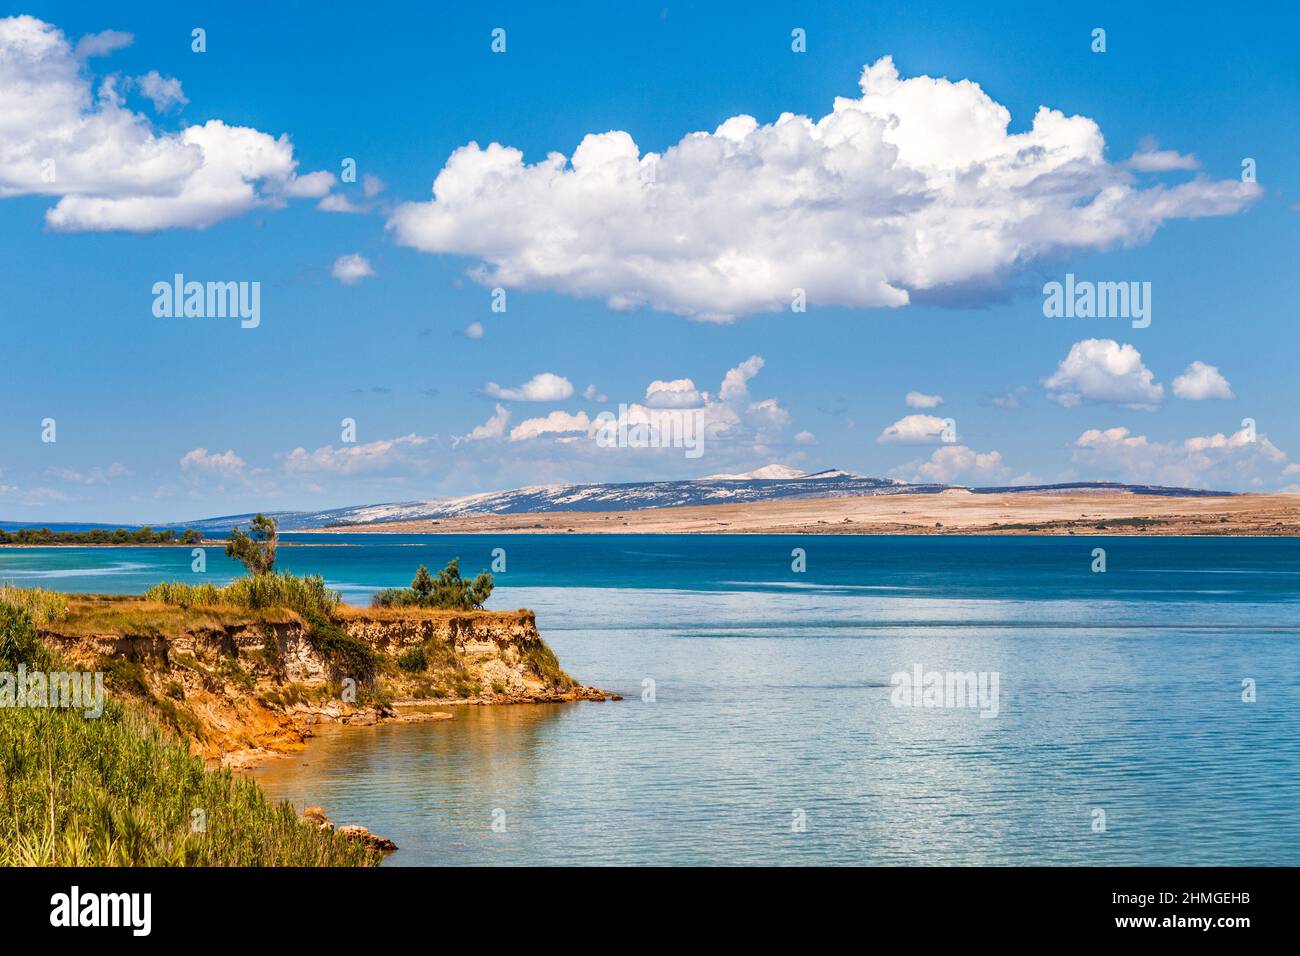 Le paysage avec baie de mer et avec l'île de Pag sur le fond, Croatie, Europe. Banque D'Images